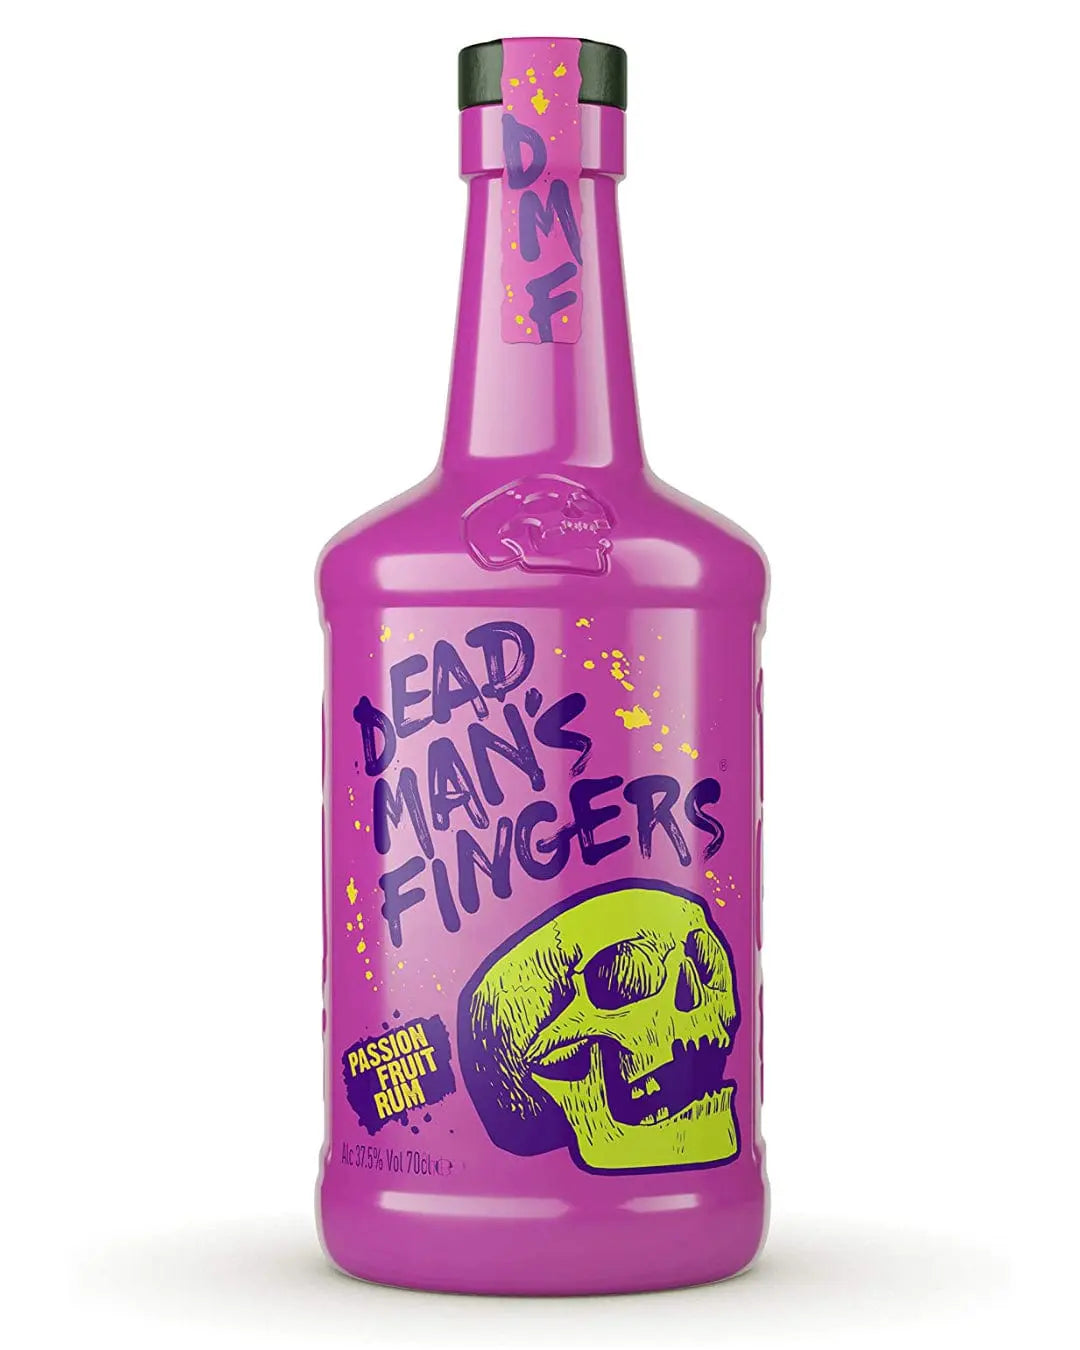 Dead Man's Fingers Passion Fruit Rum, 70 cl Rum